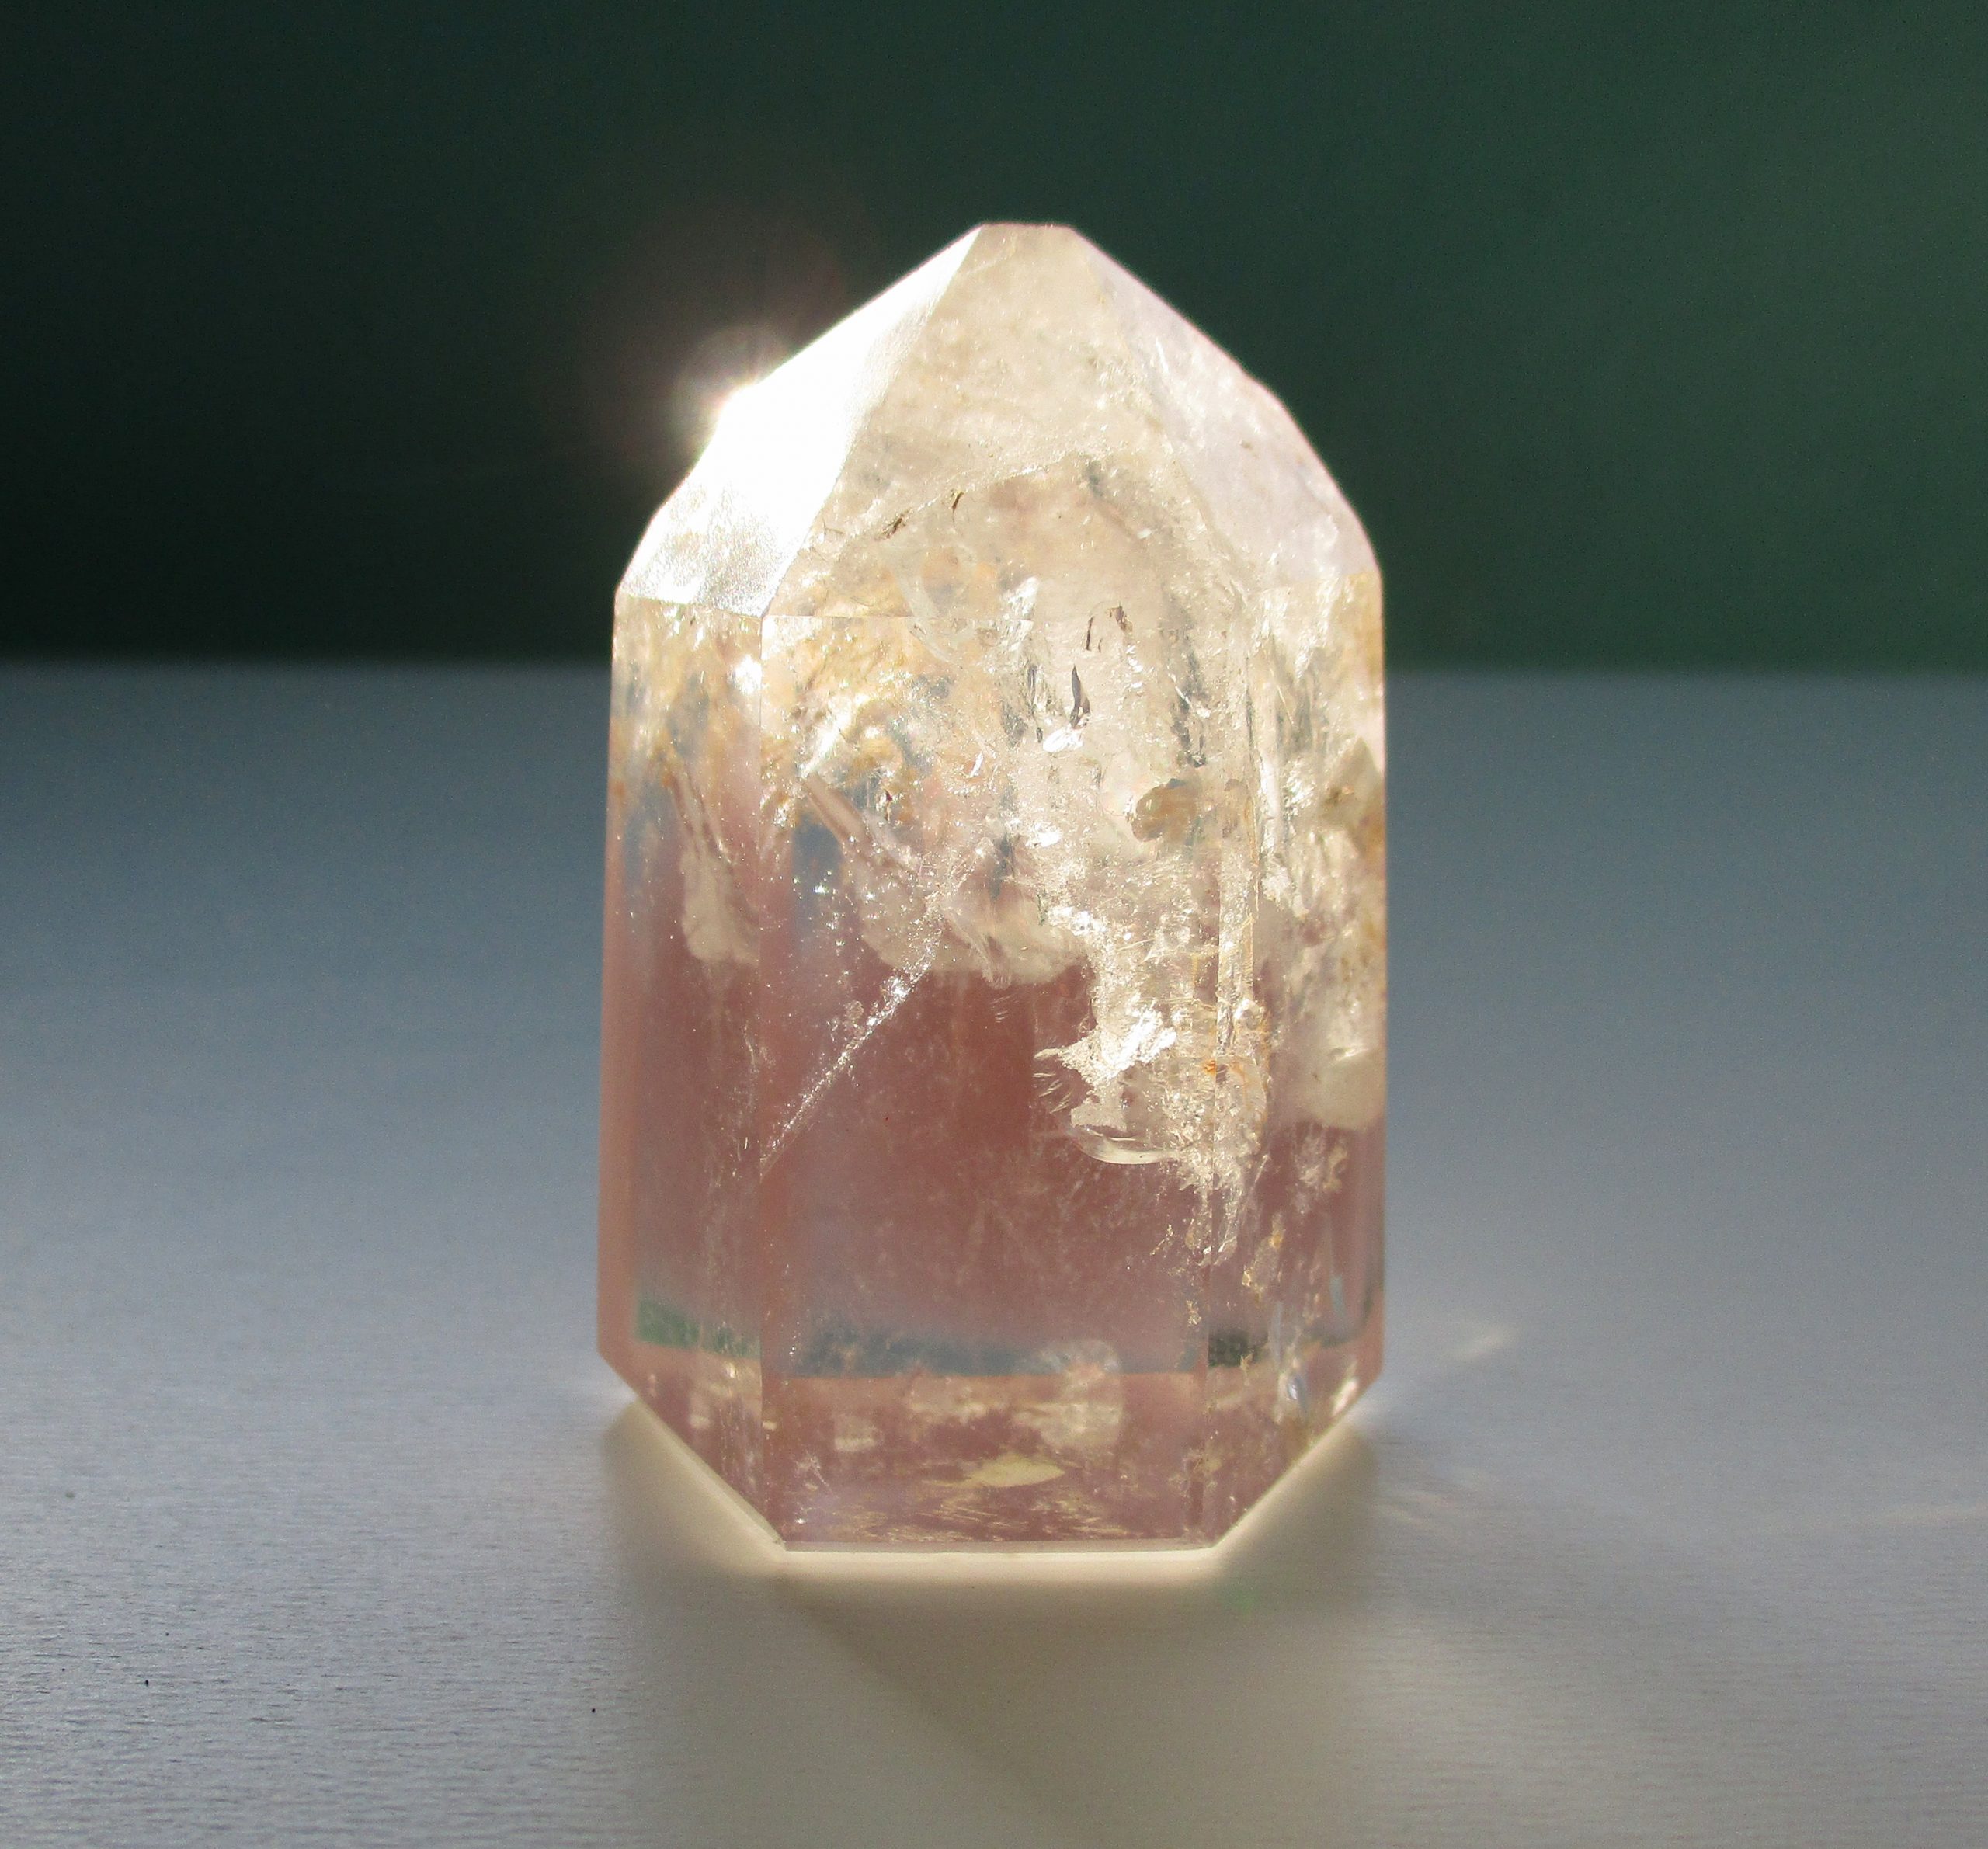 lithium quartz